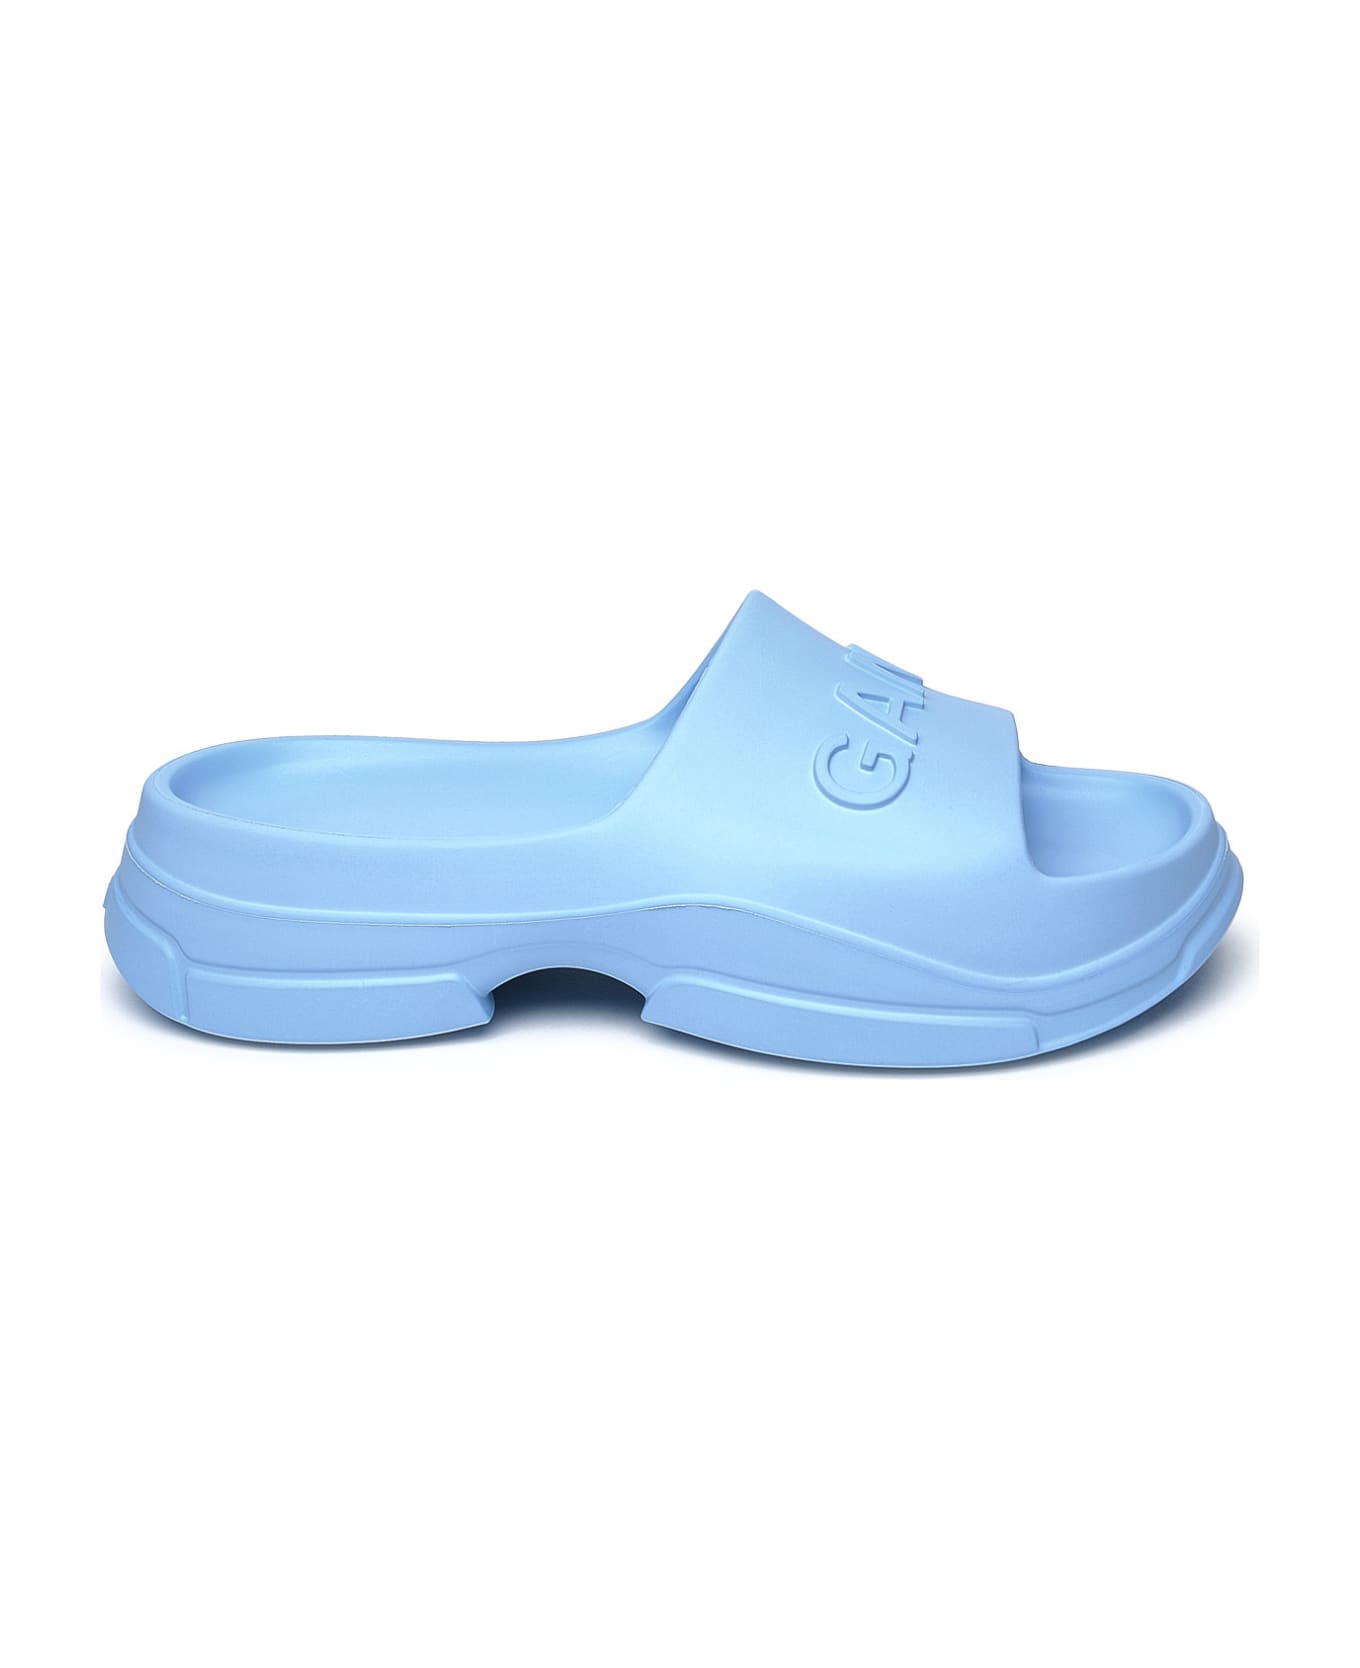 Ganni Light Blue Rubber Slippers - Light Blue